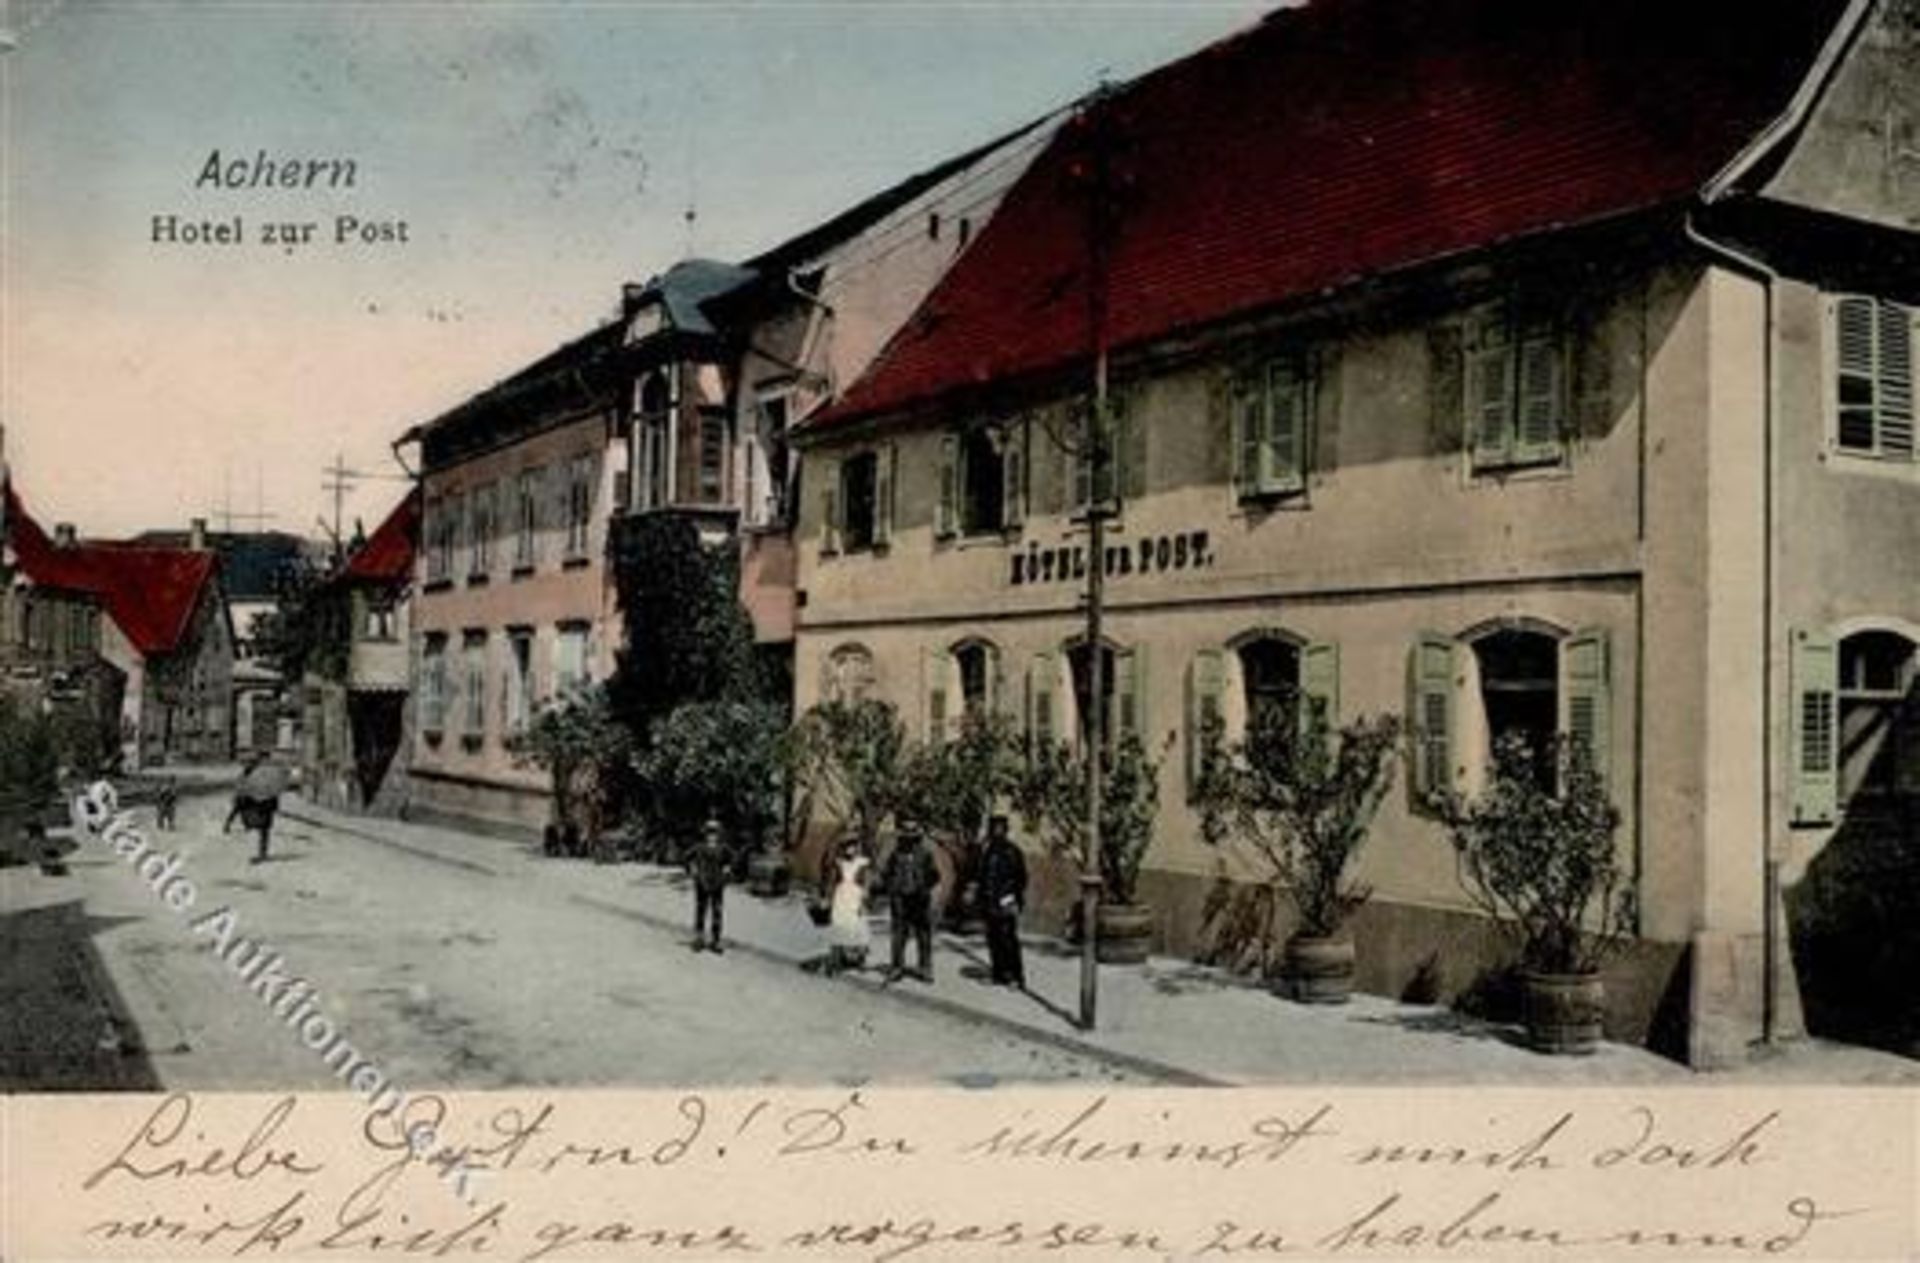 Achern (7590) Hotel zur Post 1907 II (Stauchung)Dieses Los wird in einer online-Auktion ohne